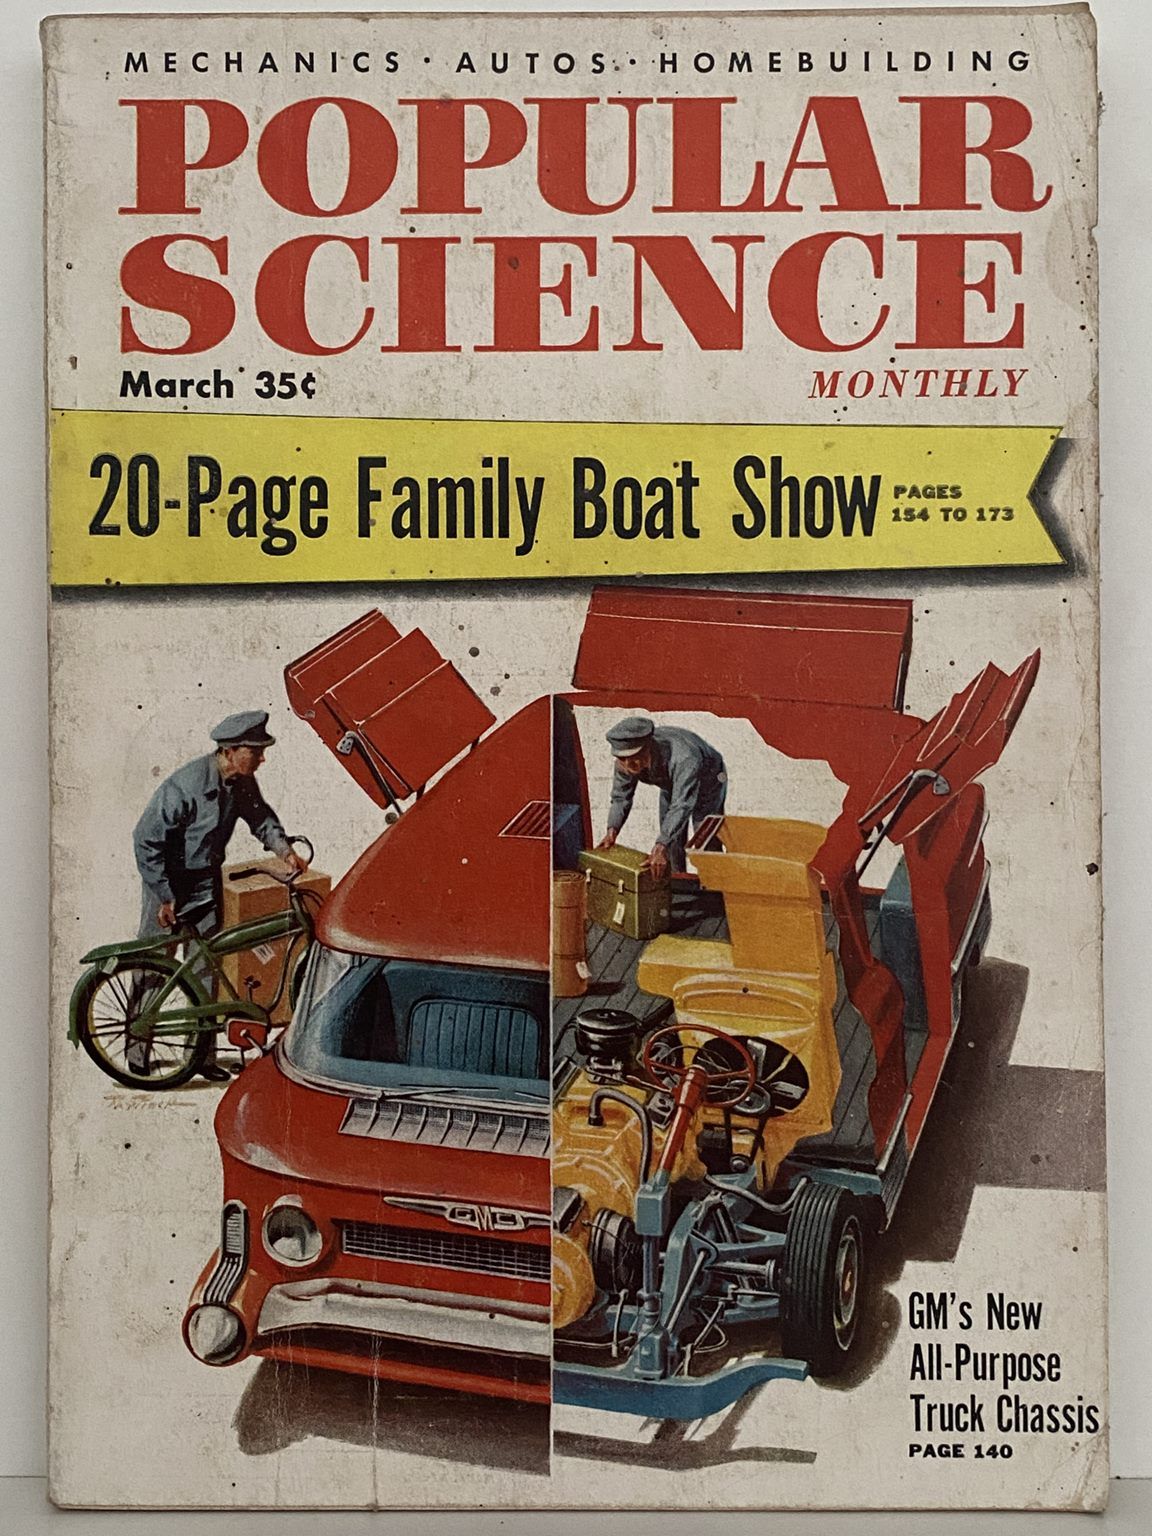 VINTAGE MAGAZINE: Popular Science, Vol. 166, No. 3 - March 1955